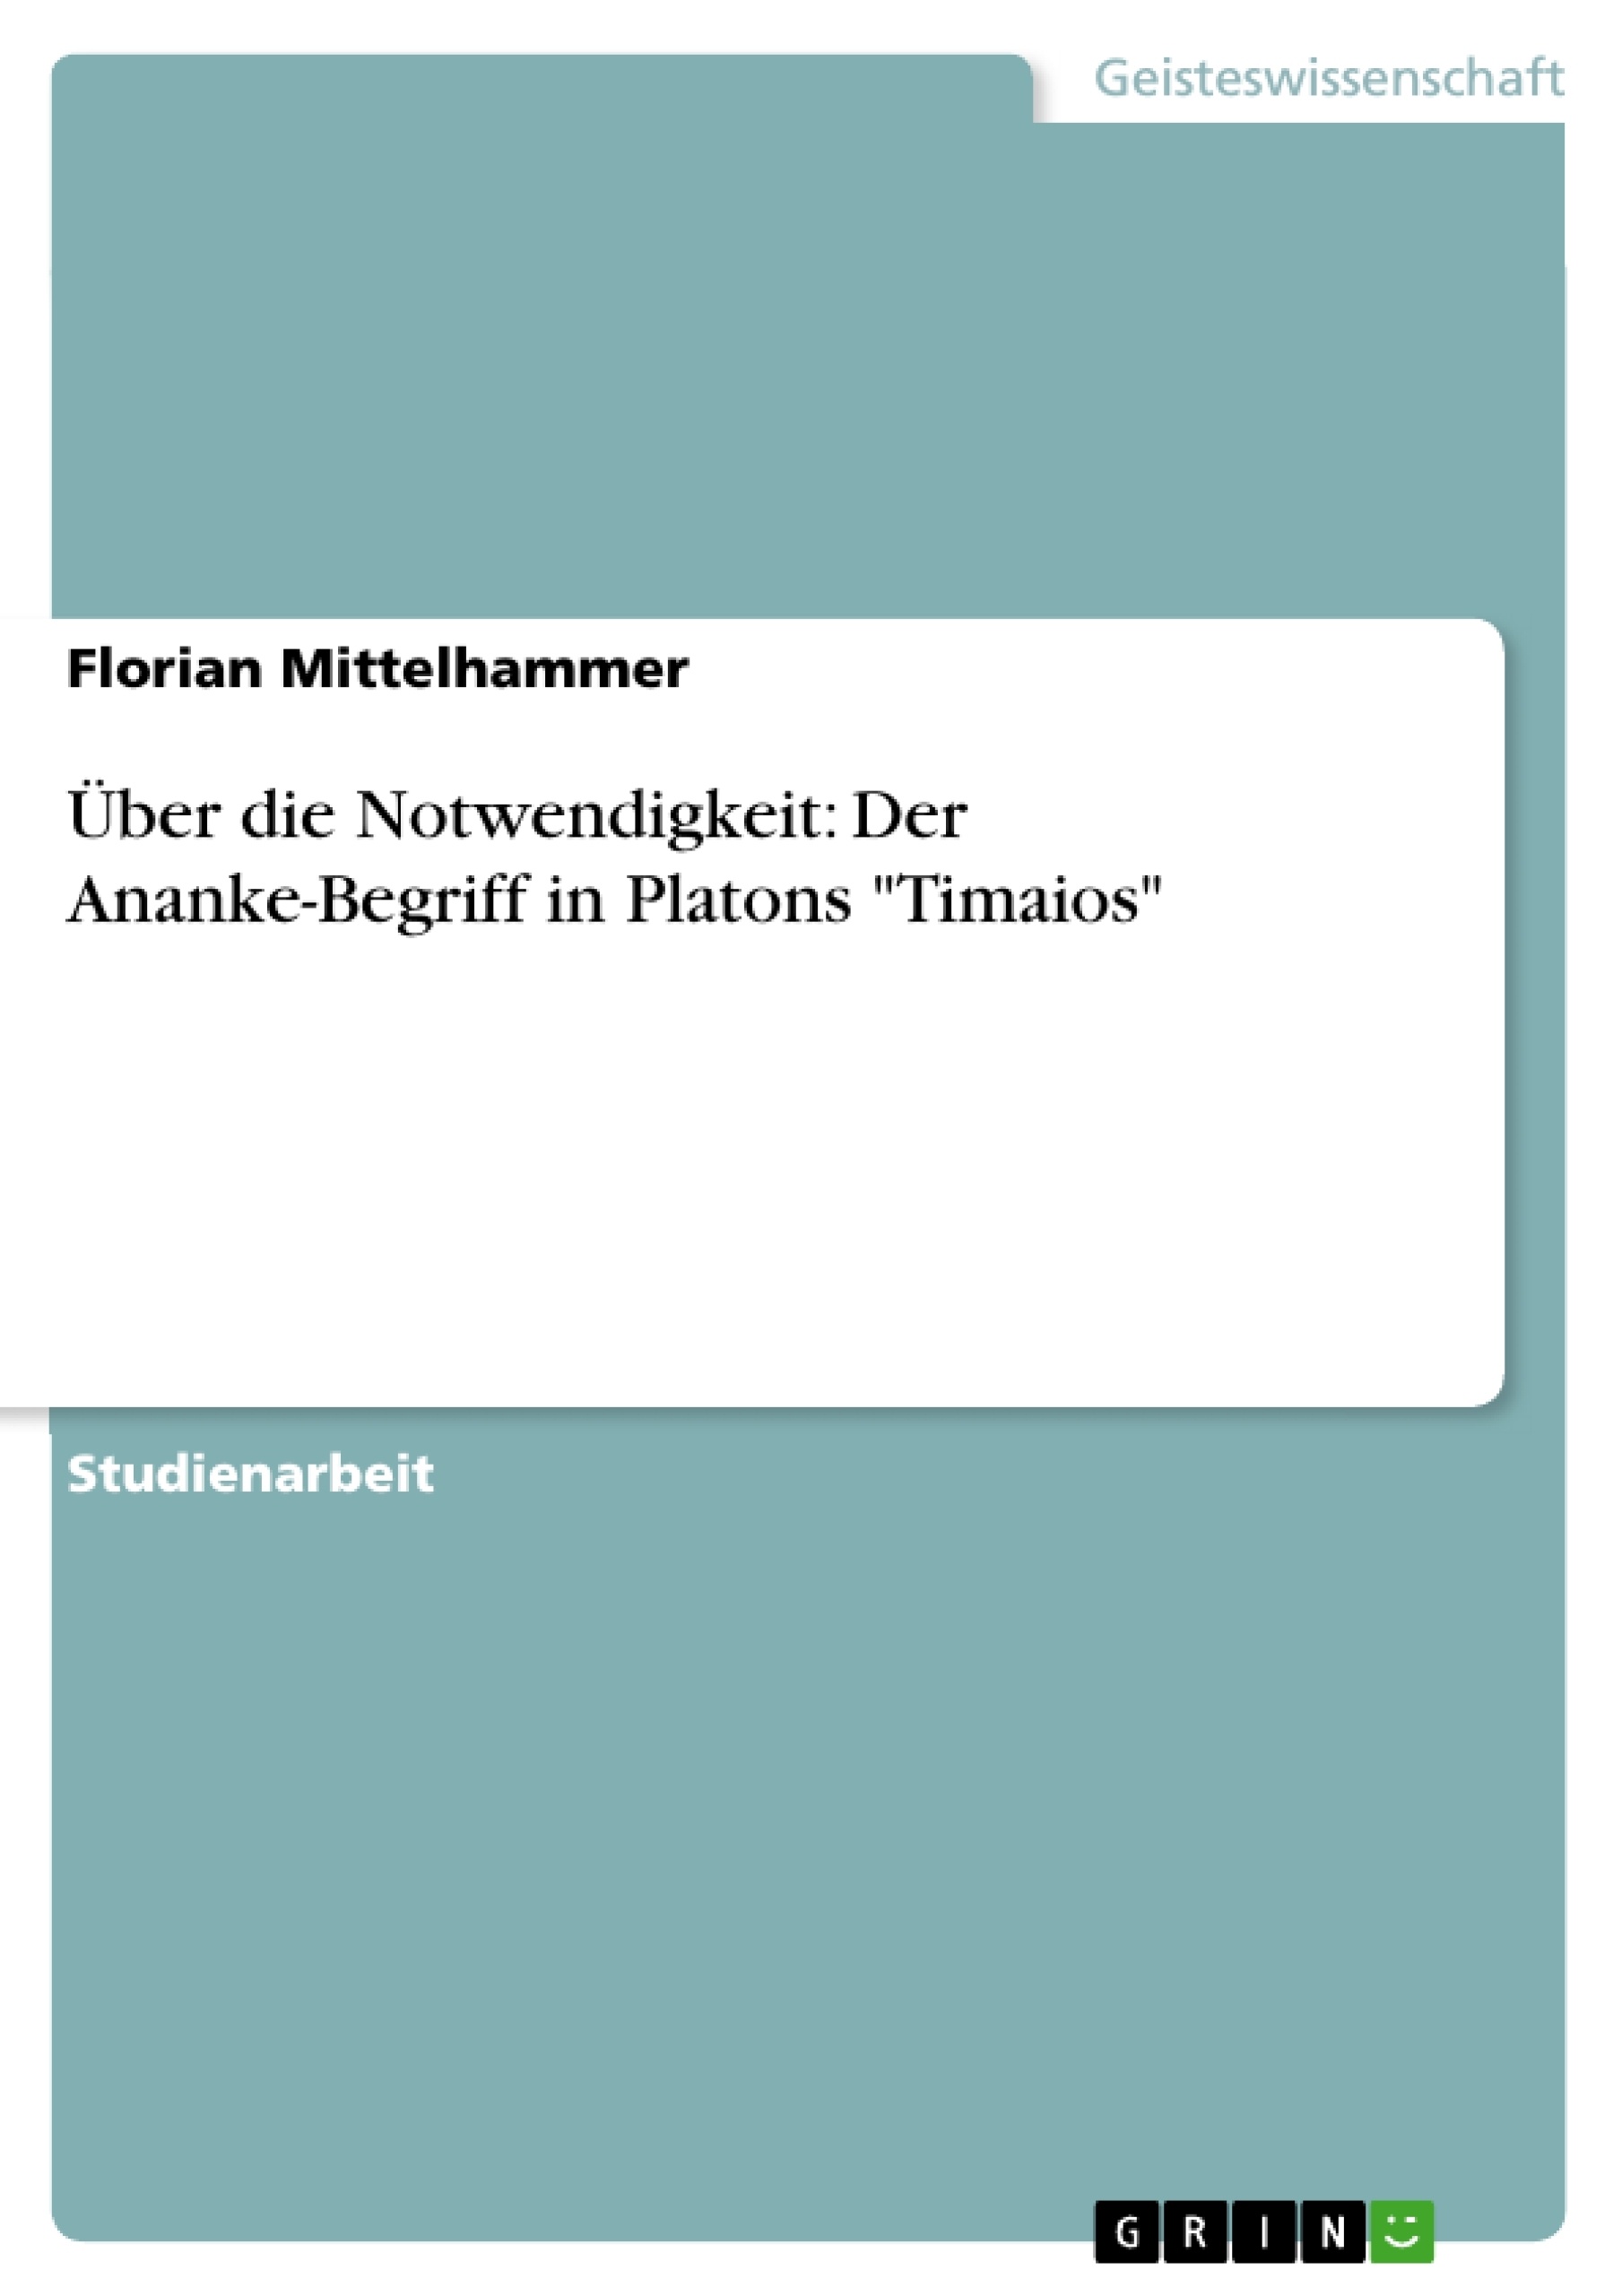 Titre: Über die Notwendigkeit: Der Ananke-Begriff  in Platons "Timaios"